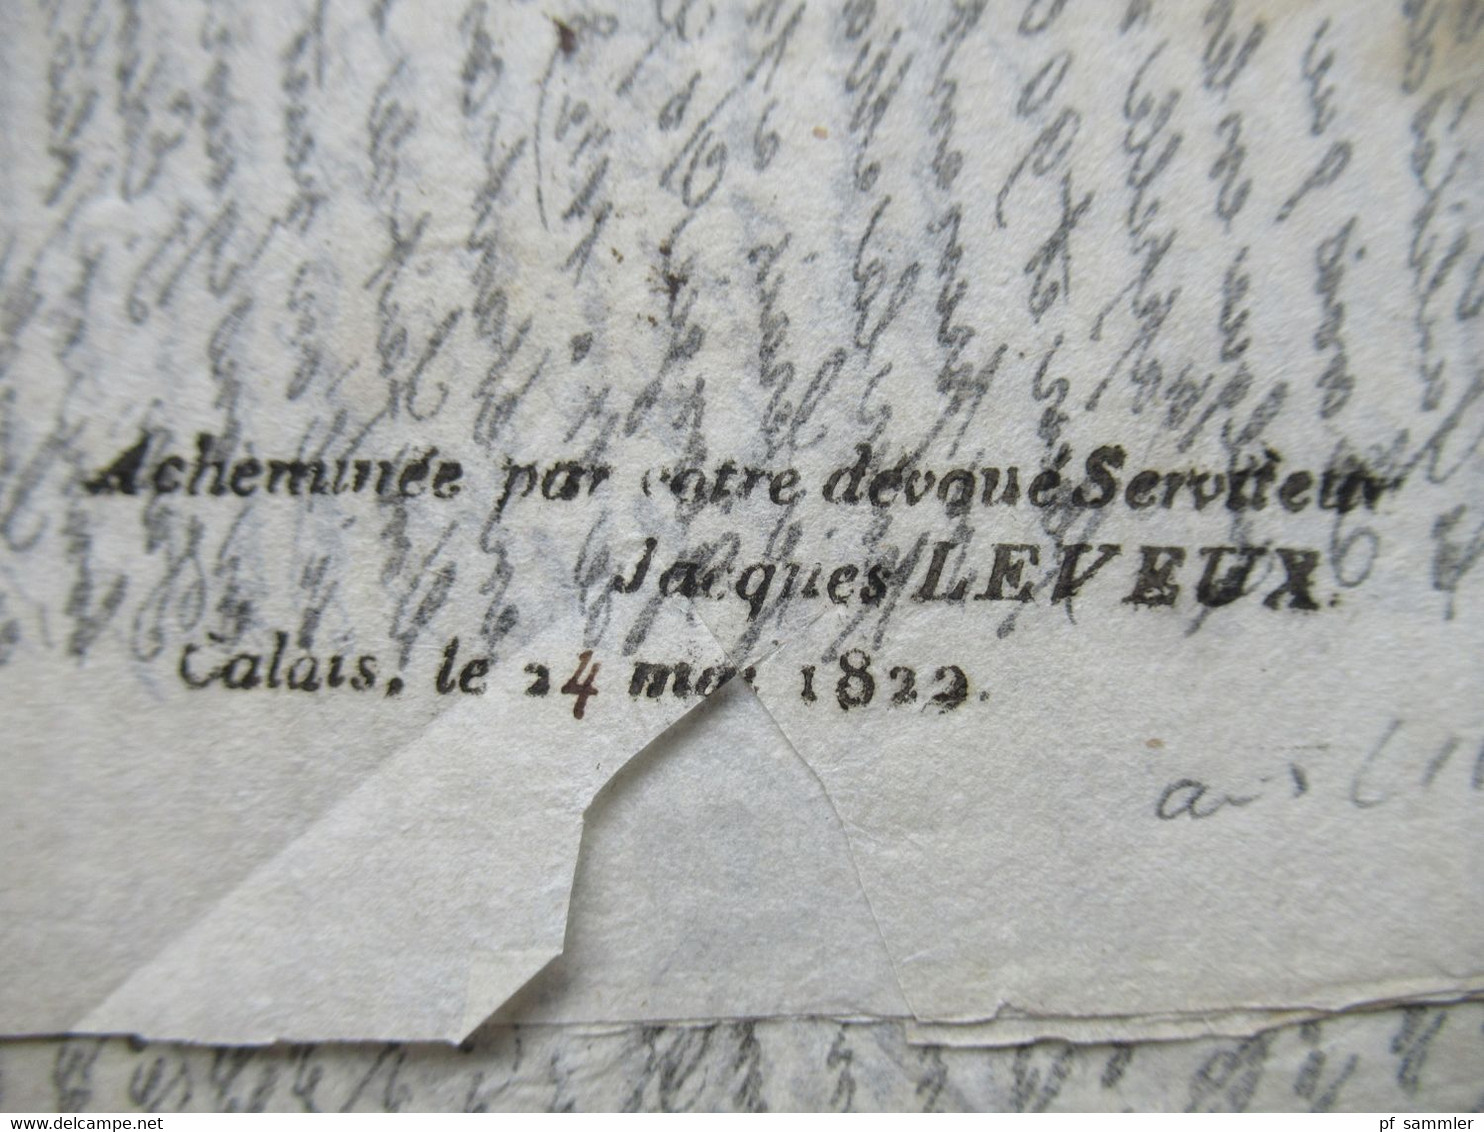 GB 1822 Forwarded letter aus Liverpool via Calais Forwarder Jacques Leveux Calais Faltbrief mit Inhalt